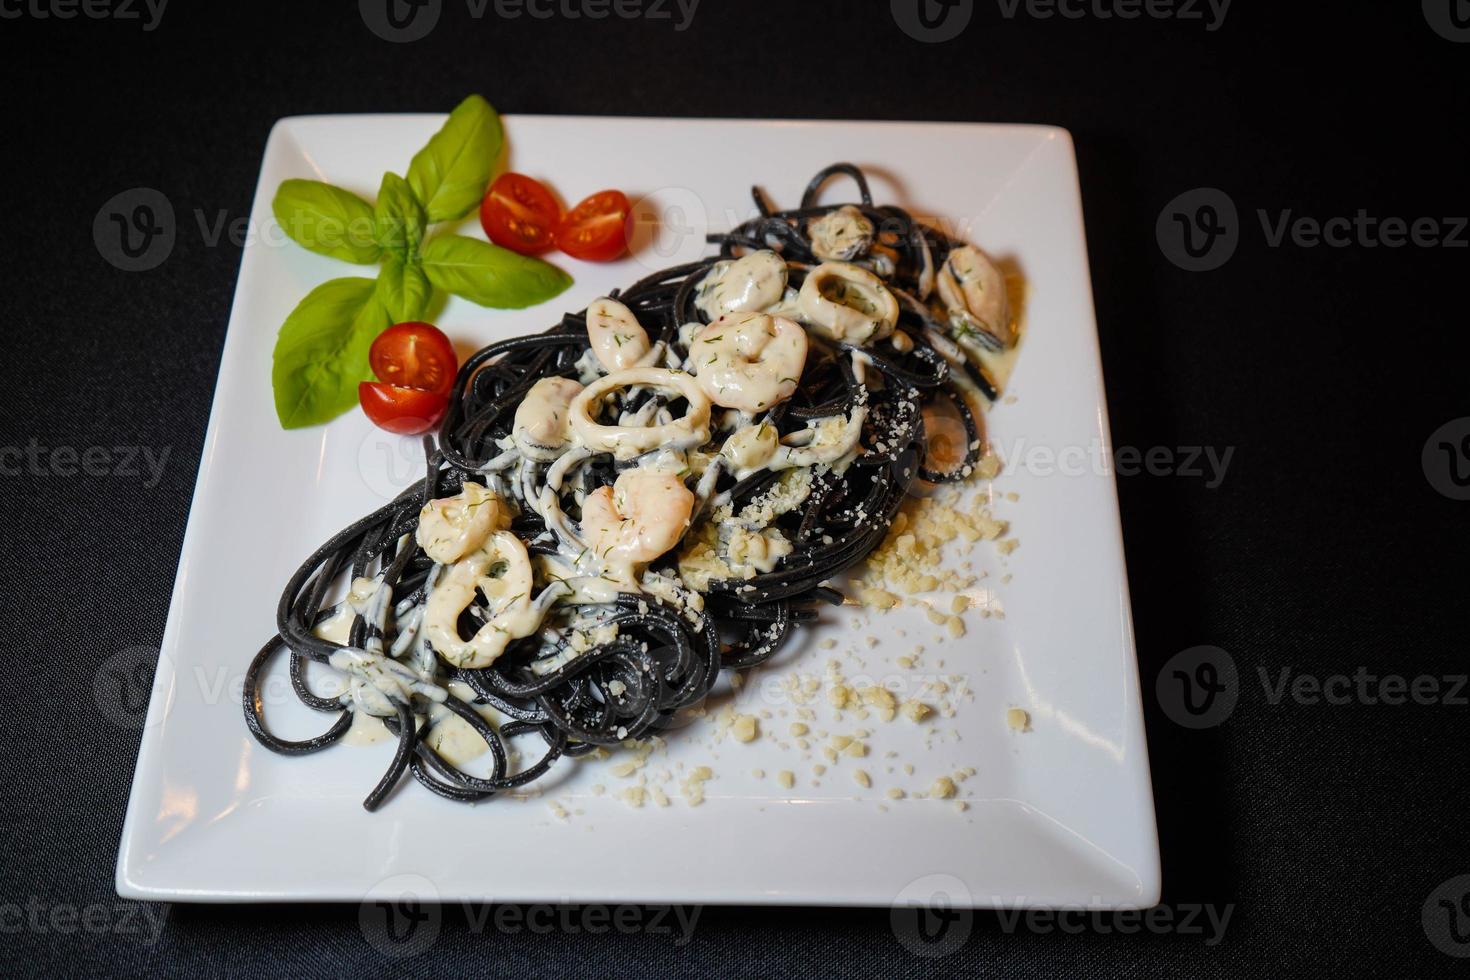 spaghetti rigate - pasta nera con frutti di mare misti foto